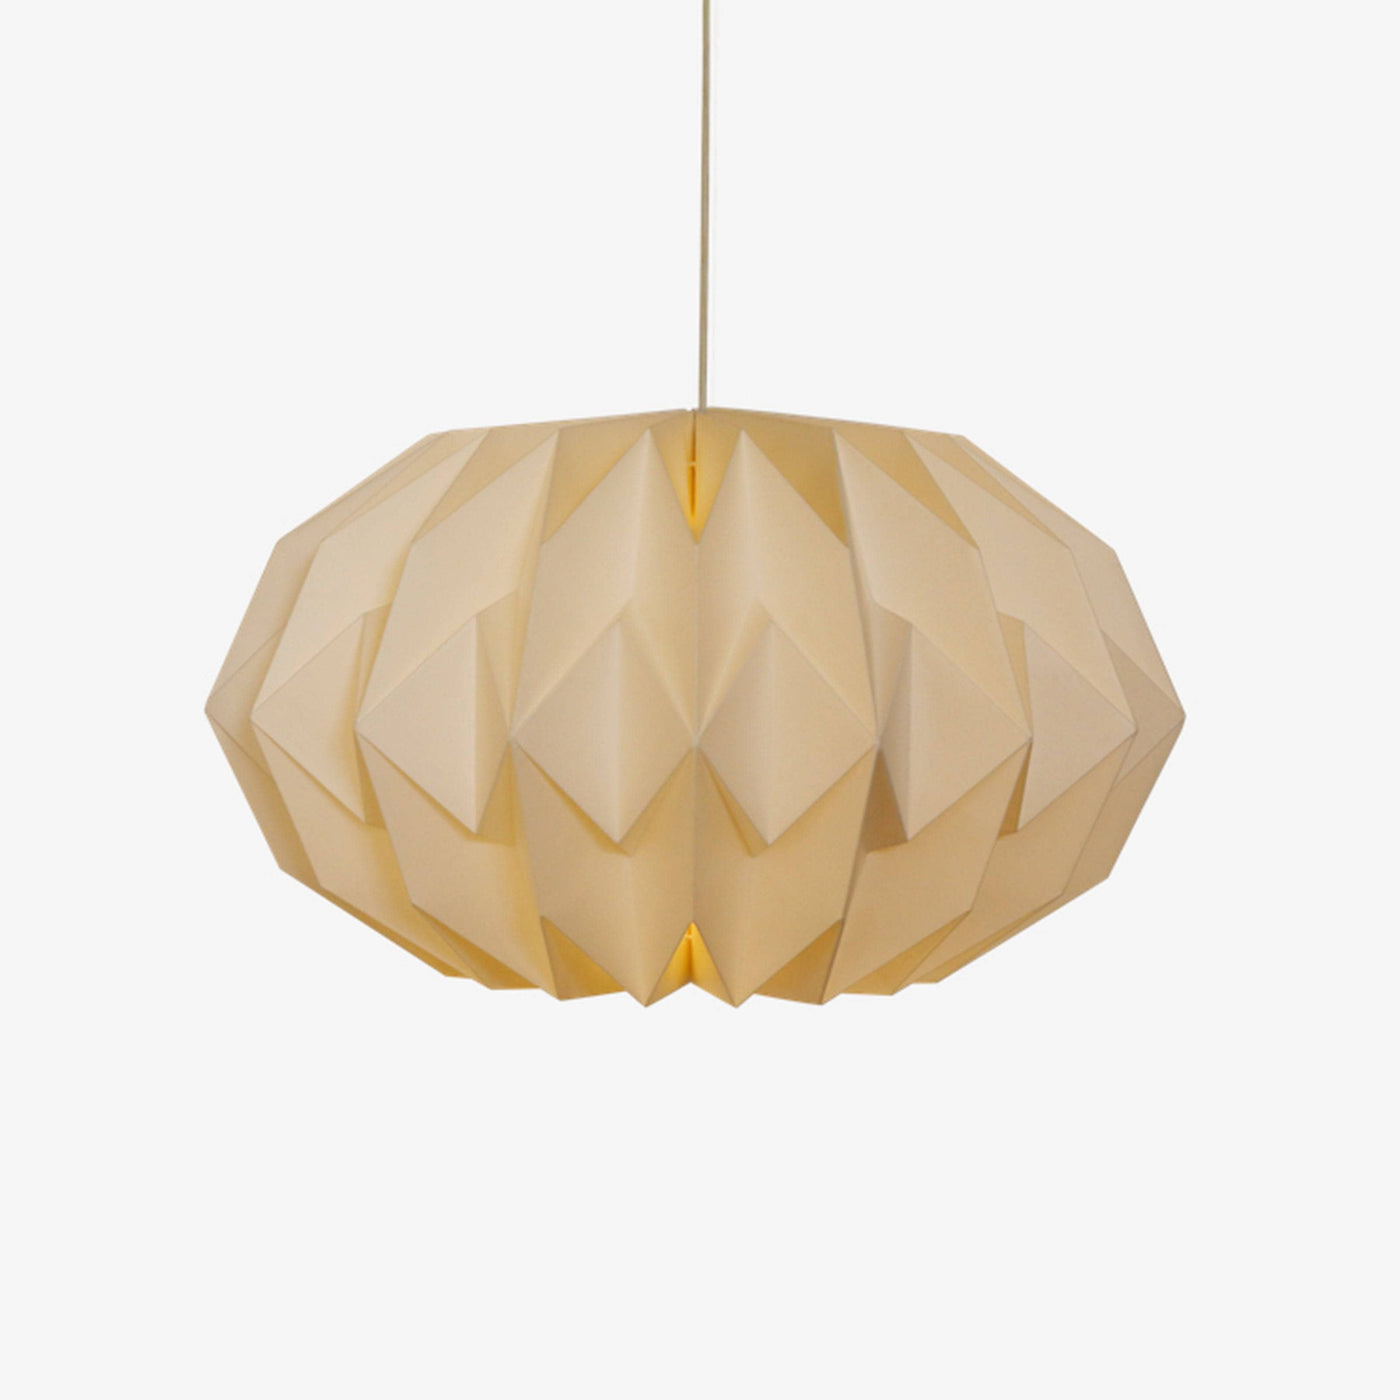 Hoshi Paper Ceiling Lamp, Off-White Ceiling Lighting sazy.com